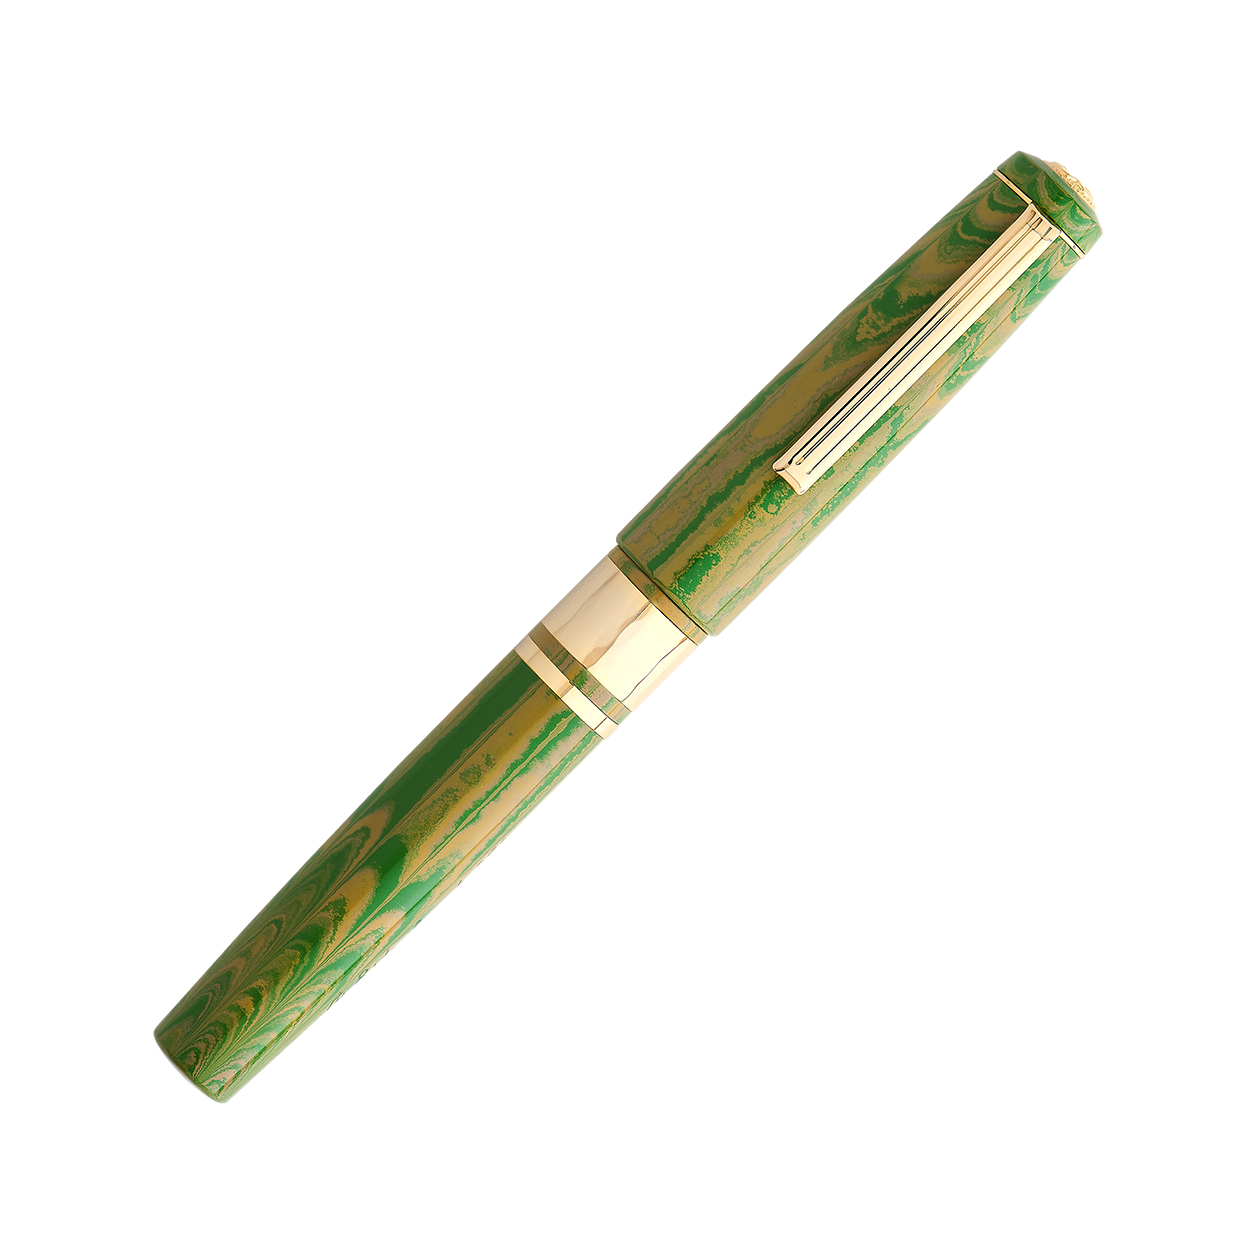 Esterbrook - Model J Ebonite - Lotus Green-Vulpen-DutchMills